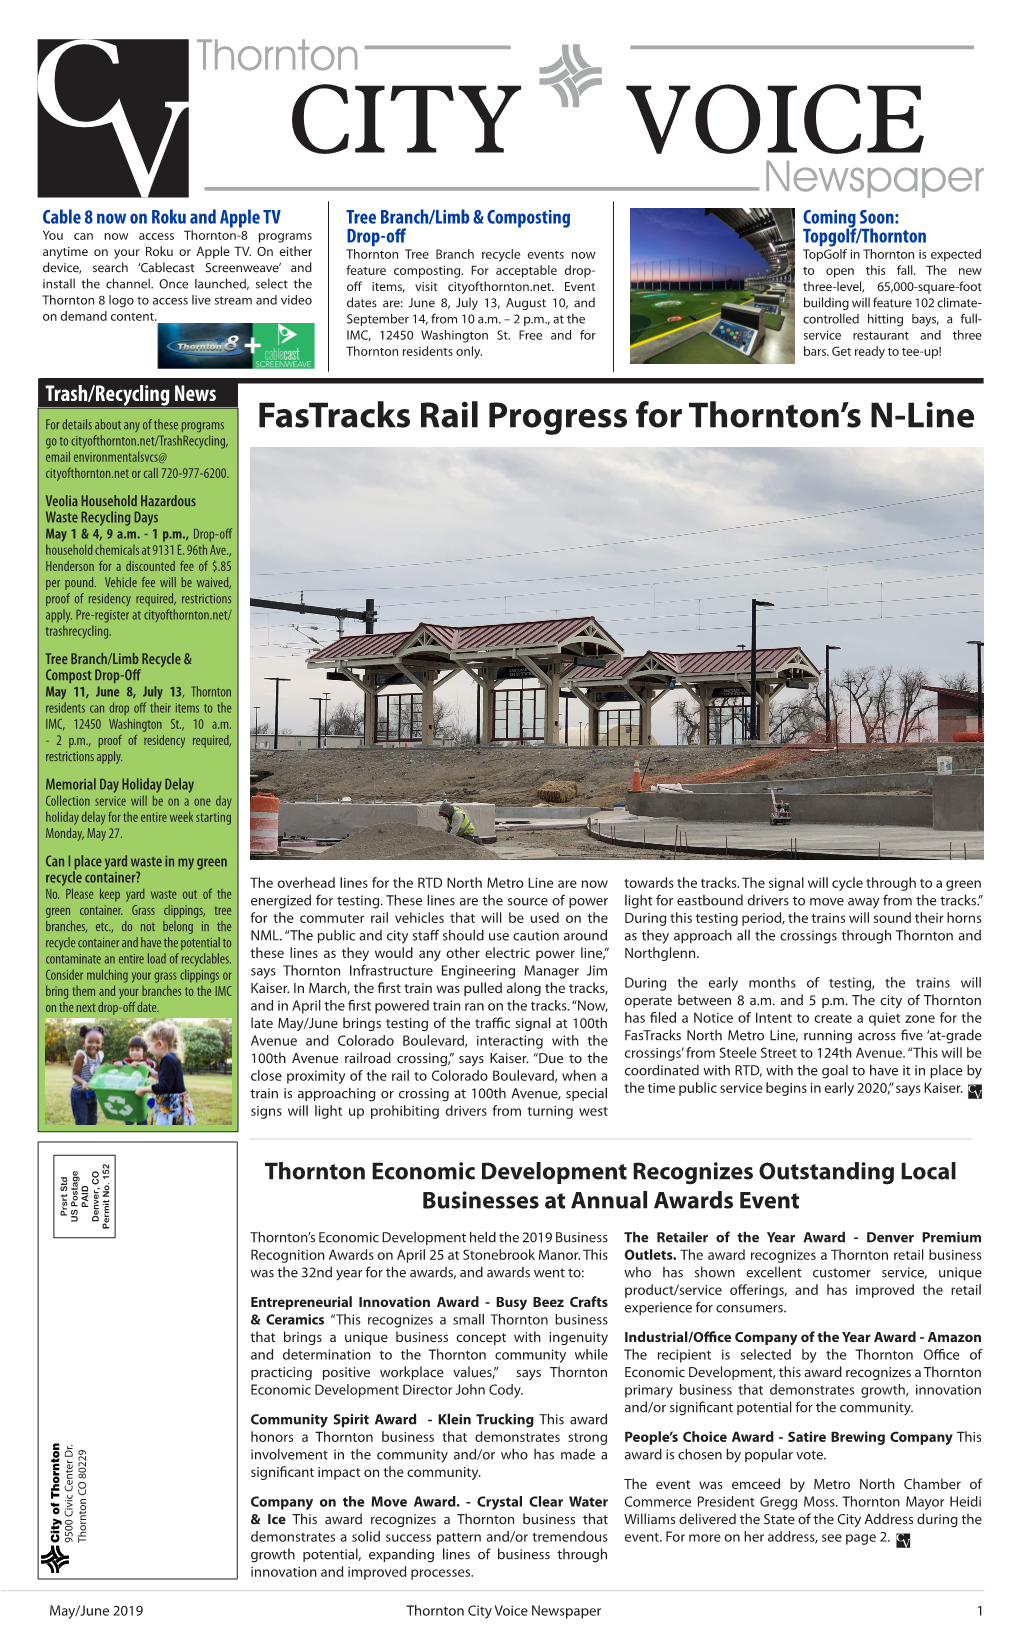 Fastracks Rail Progress for Thornton's N-Line